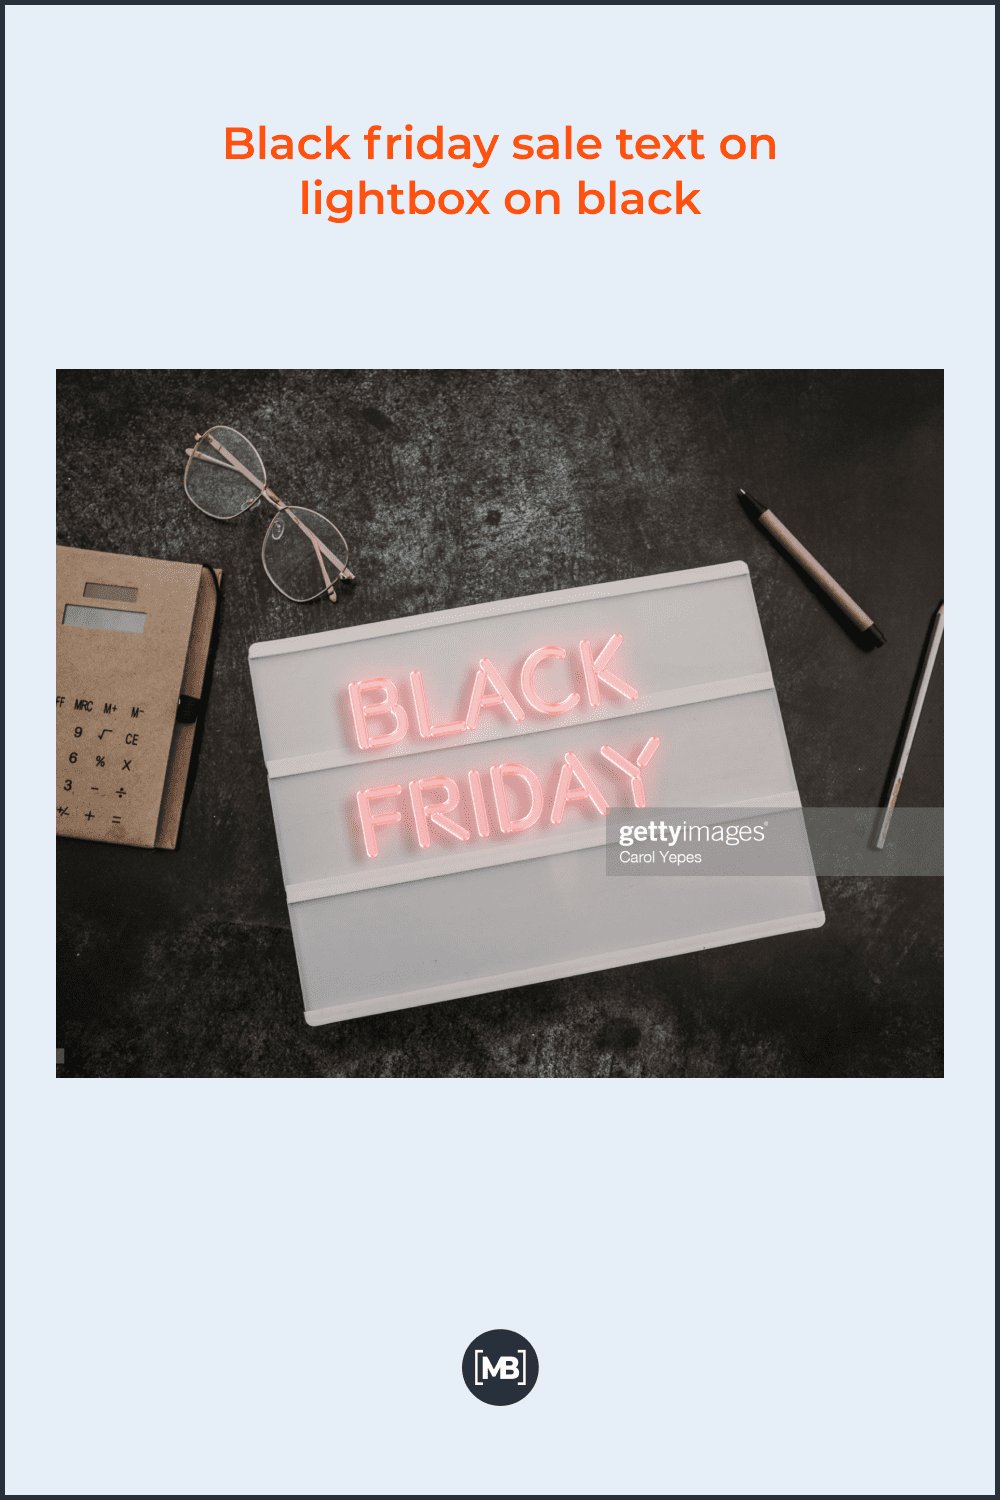 Black Friday sale text on lightbox on black.